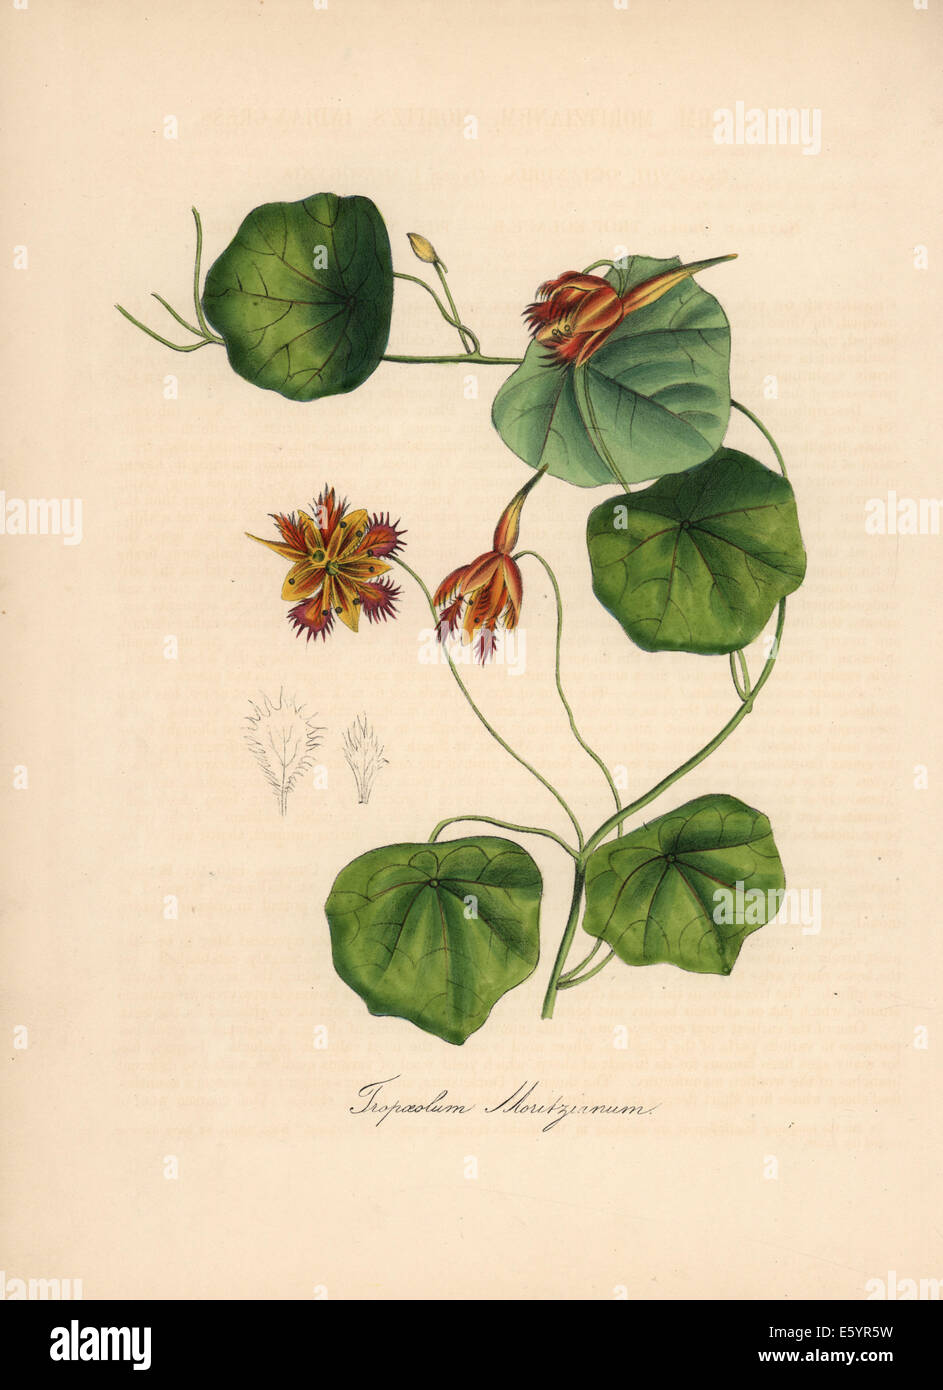 Nasturtium, Tropaeolum moritzianum. Stock Photo